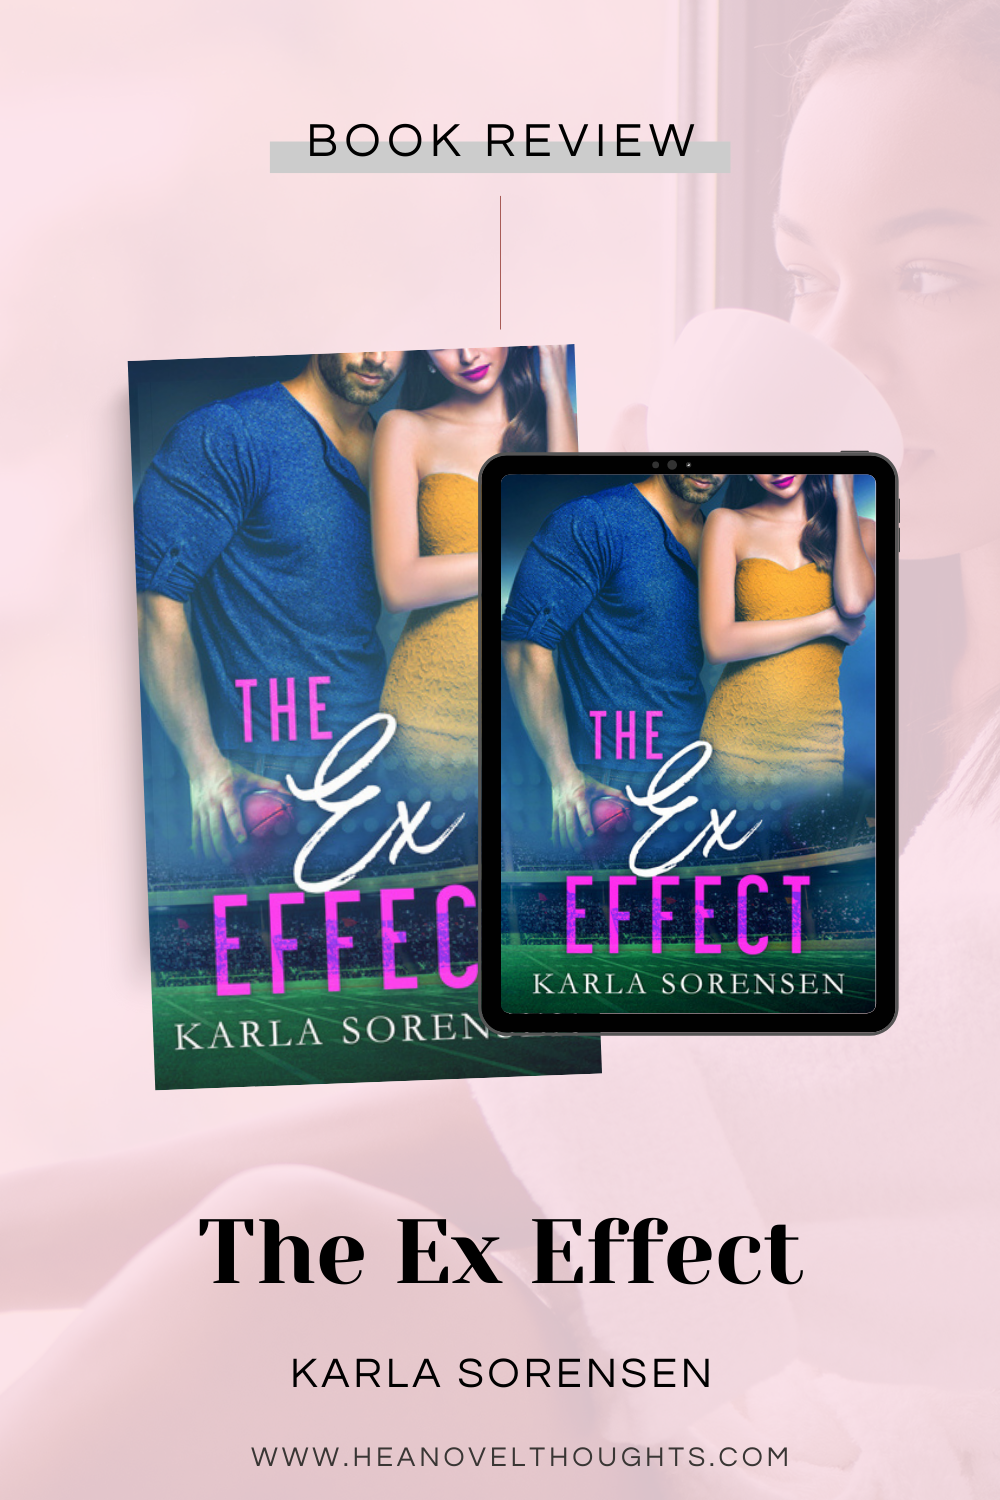 The Ex Effect by Karla Sorensen